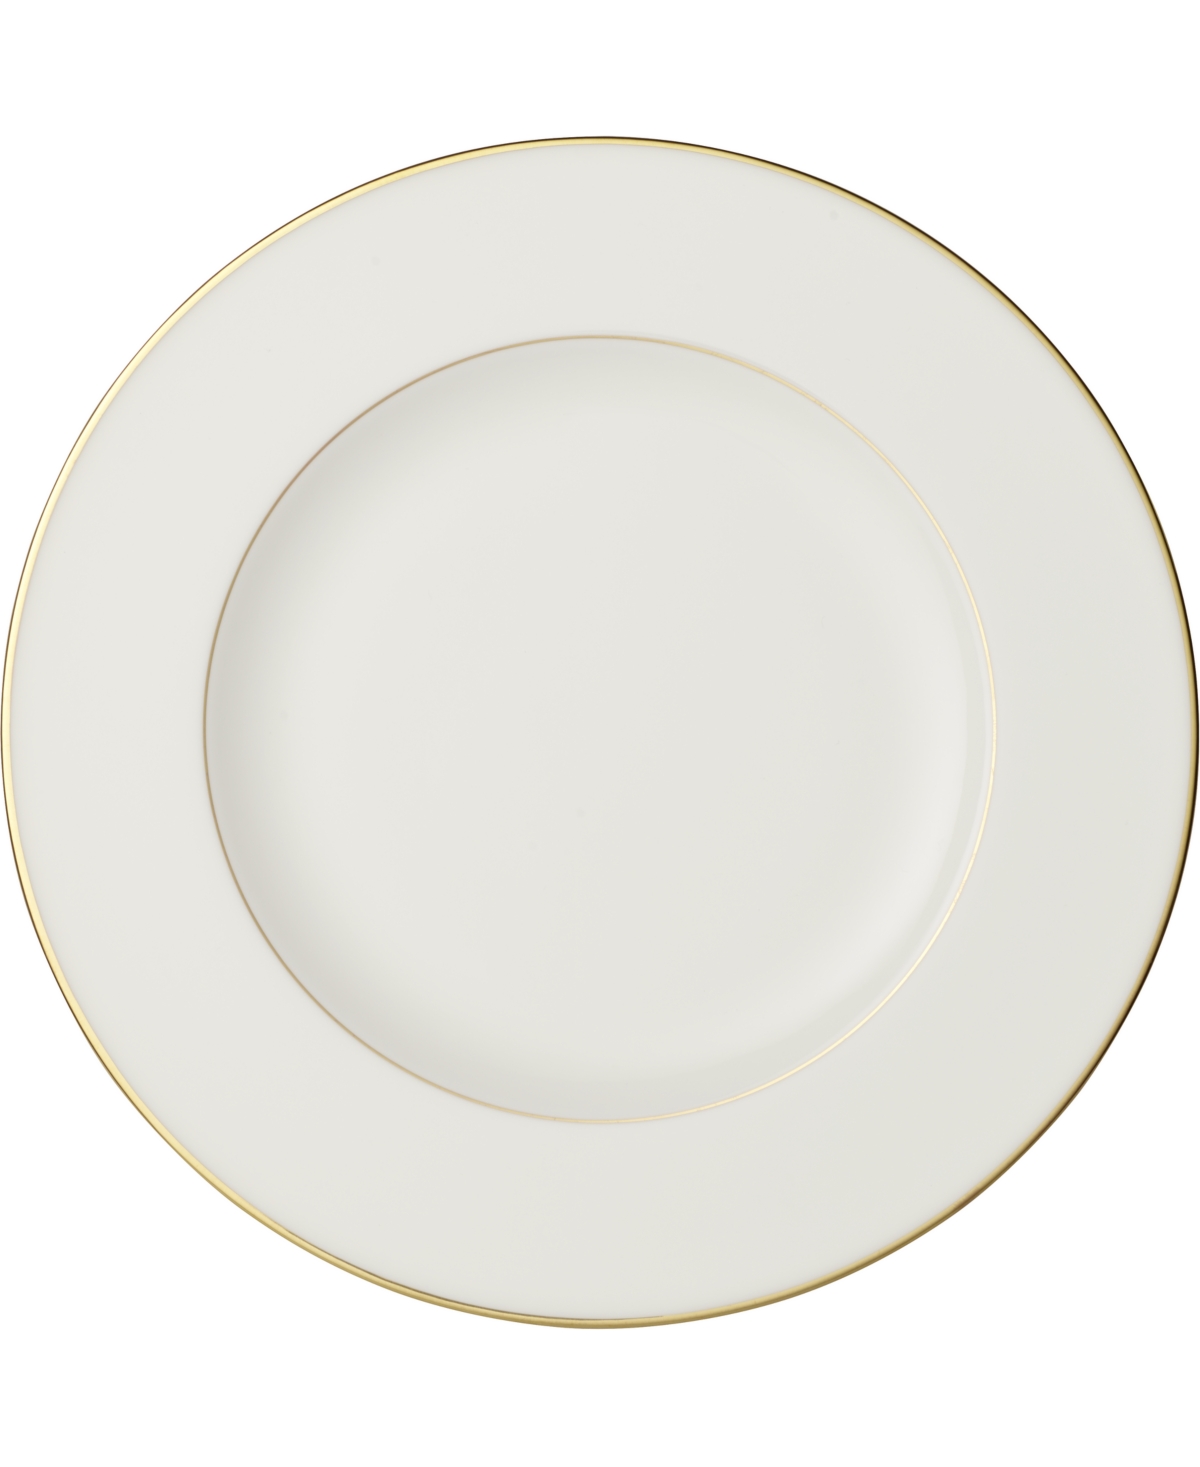 Villeroy & Boch Anmut Gold Dinner Plate